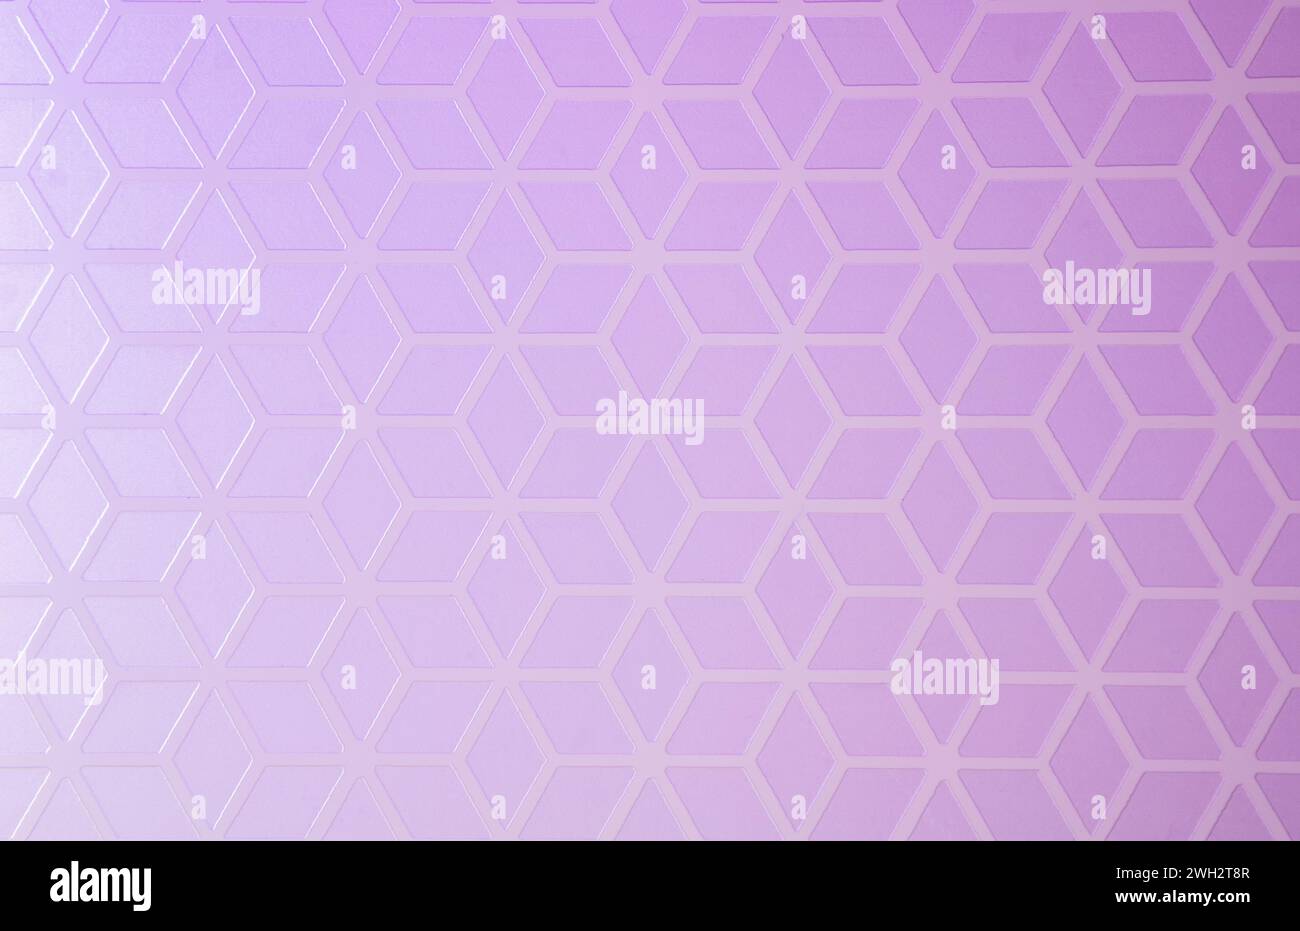 Fond géométrique créatif de formes de losange avec un gradient violet-lilas. Banque D'Images